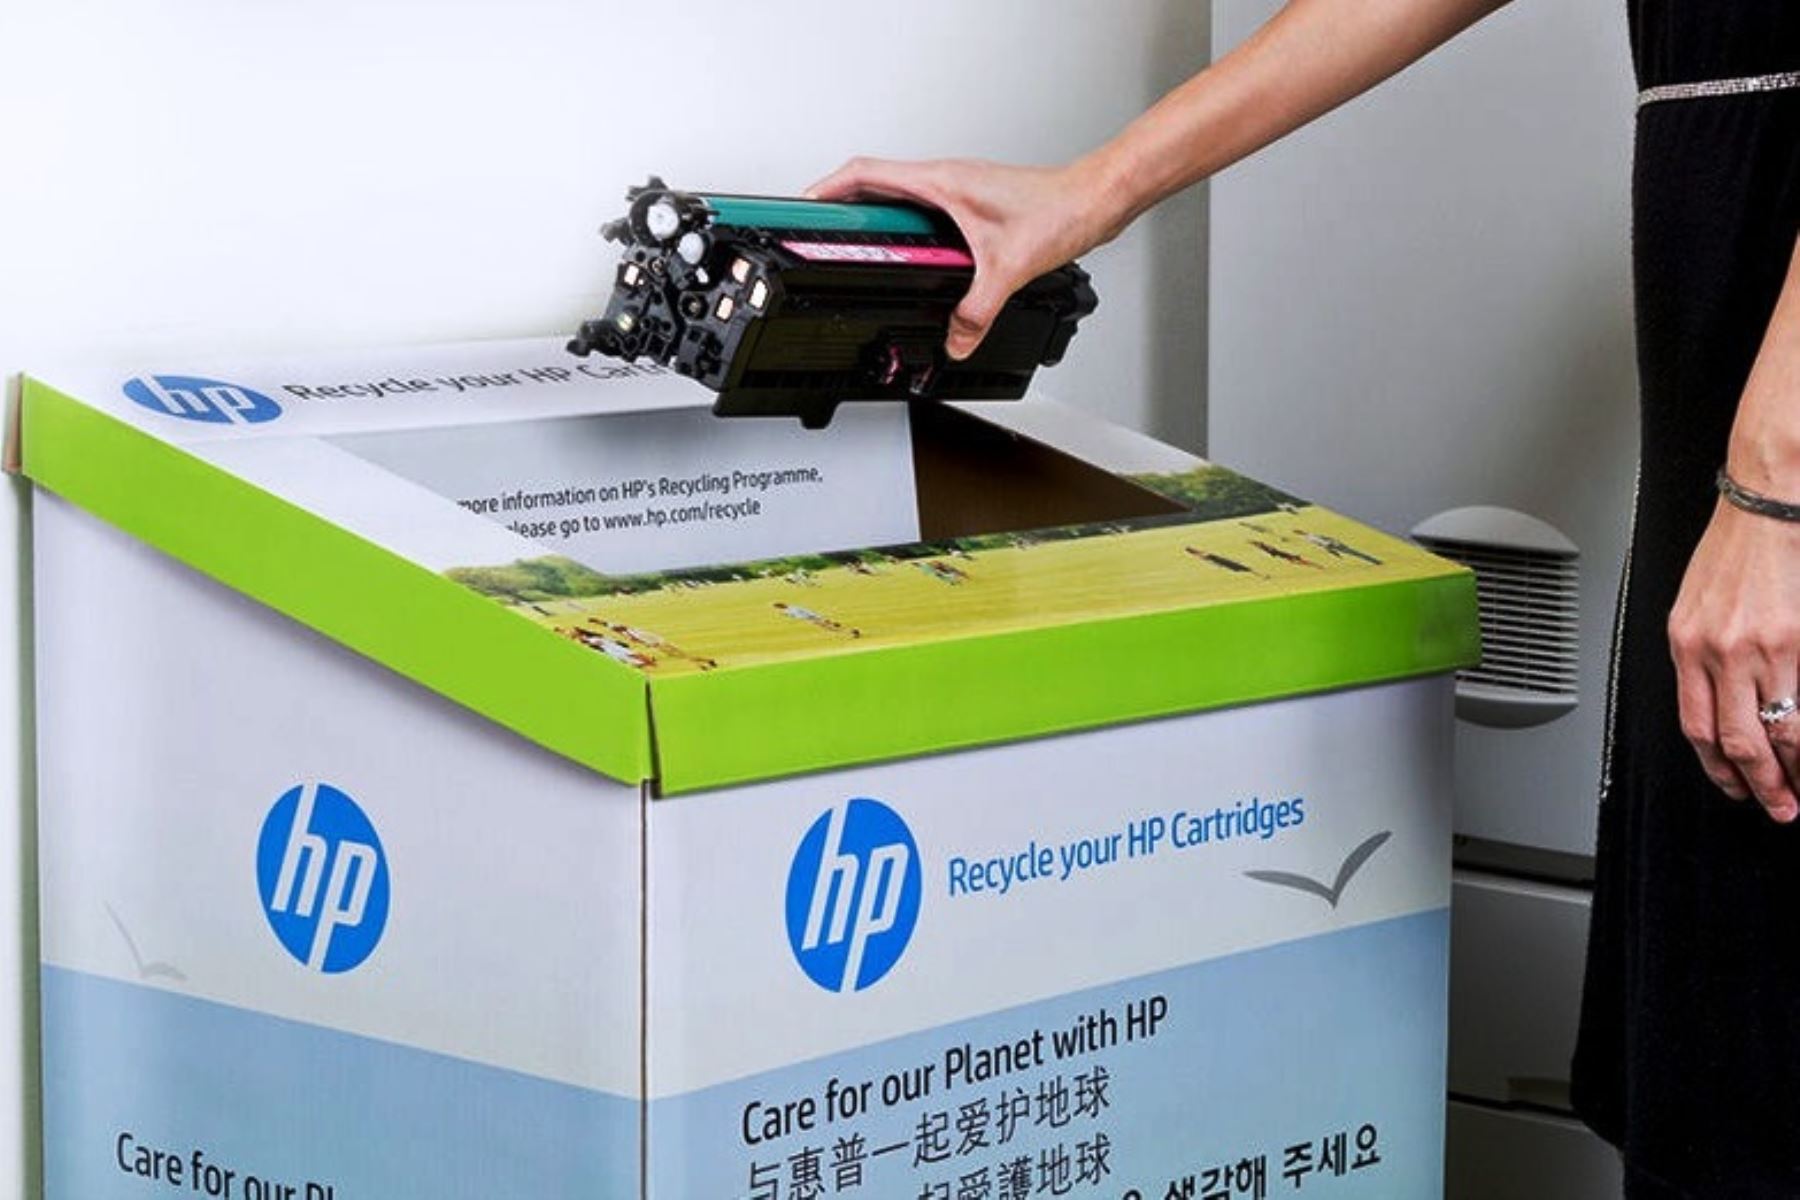 Equipos de computo usados en Perú son enviados a EE.UU. para su reciclaje. Foto: ANDINA/Internet.